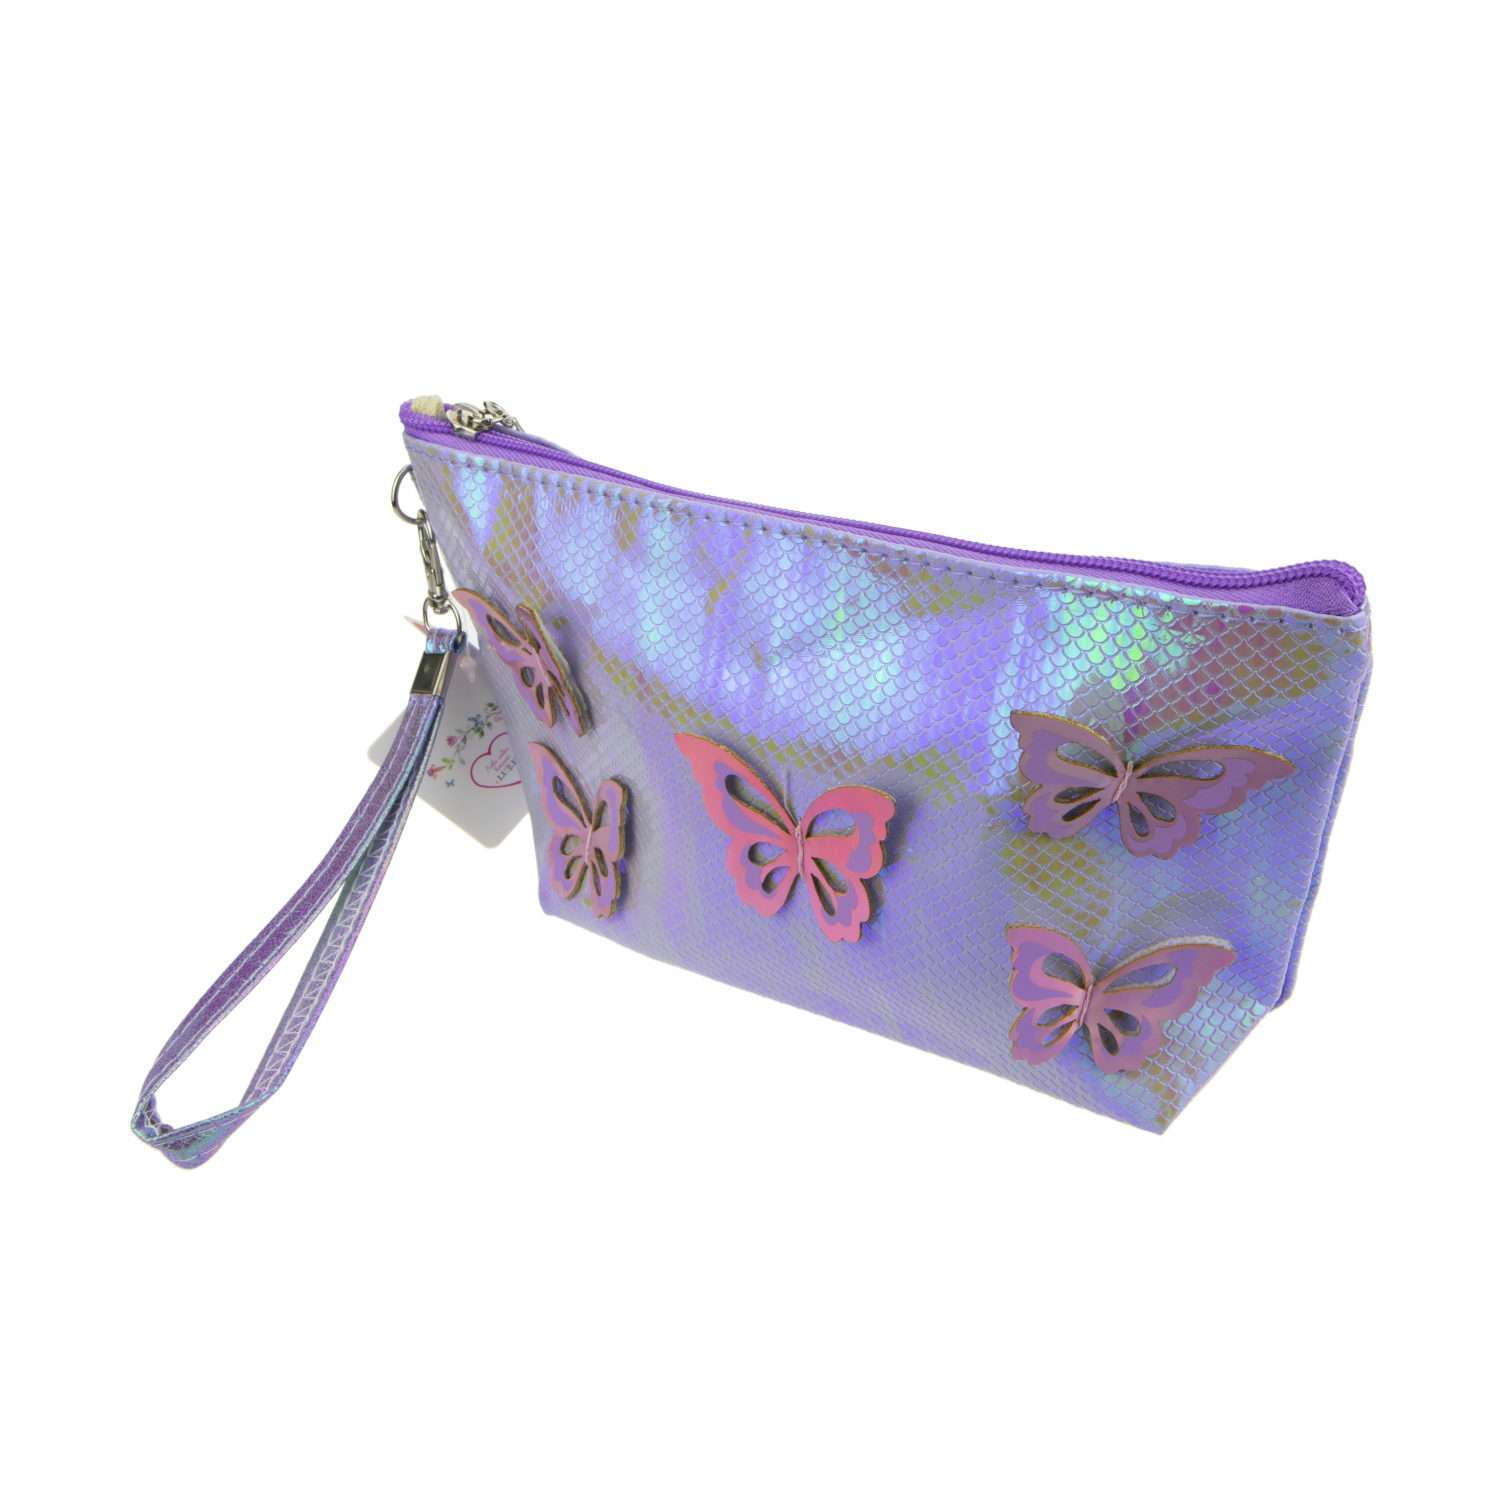 Пенал- косметичка Lukky с голографическими накладными бабочками сиреневая 24х13 см - фото 8